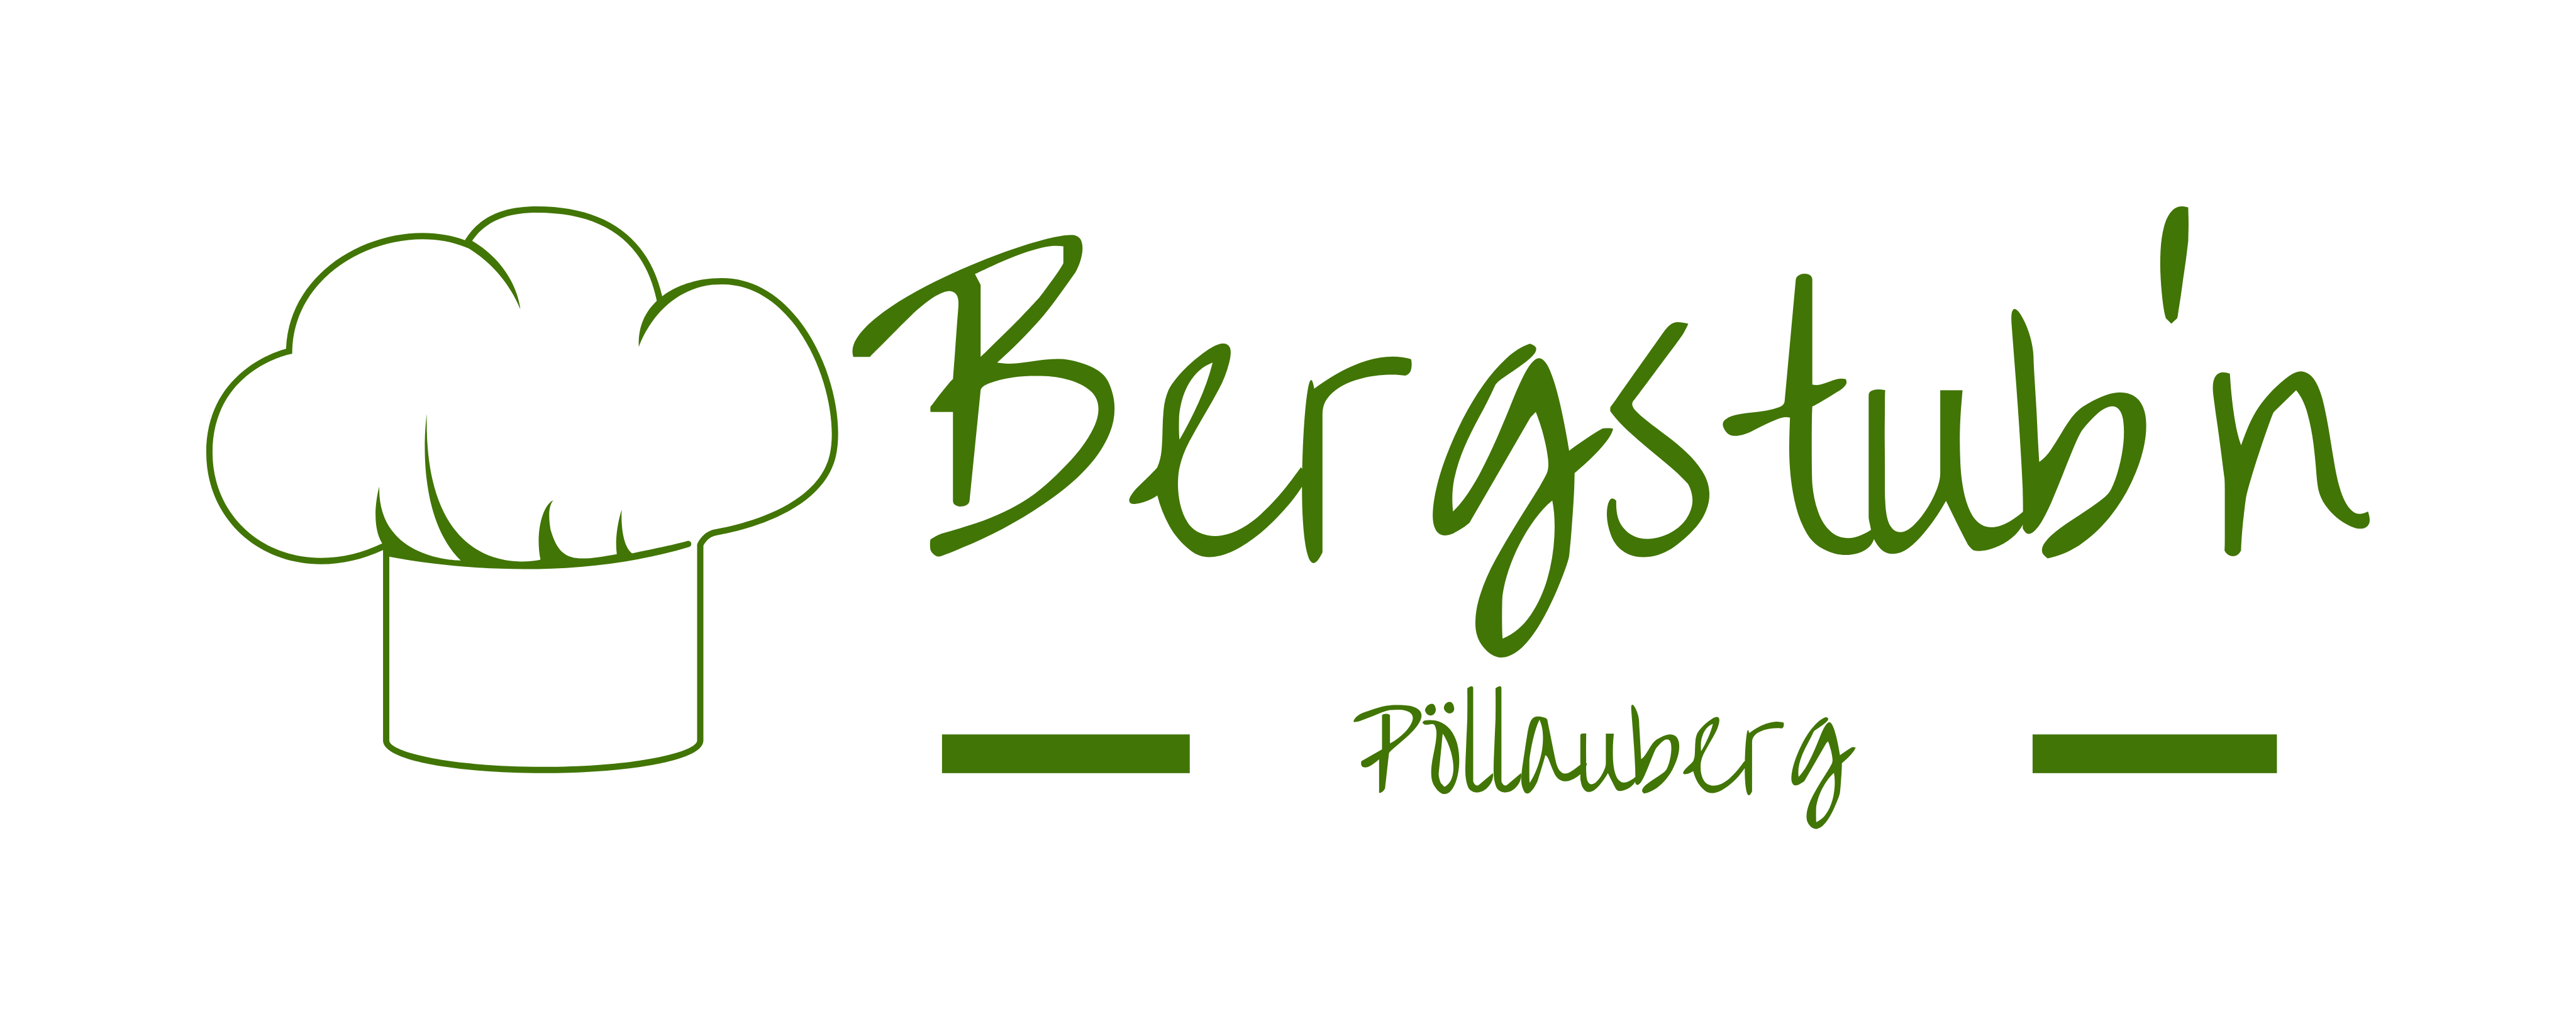 Bergstubn-Logo1